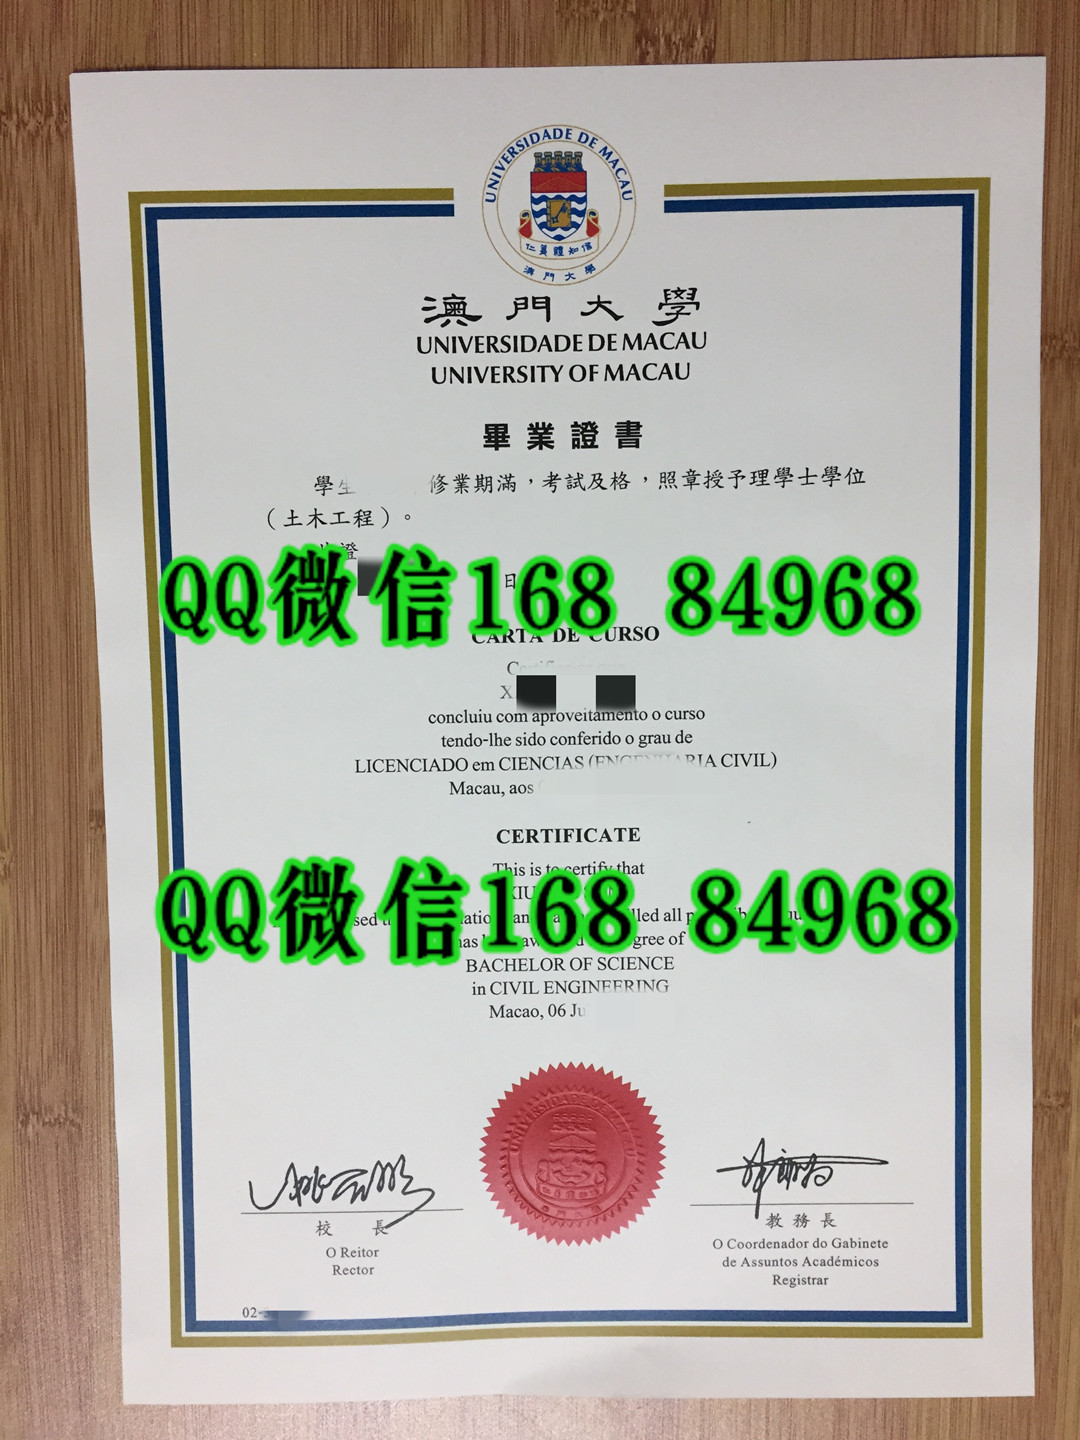 分享旧版本澳门大学毕业证照片，澳门毕业证照片University of Macau diploma